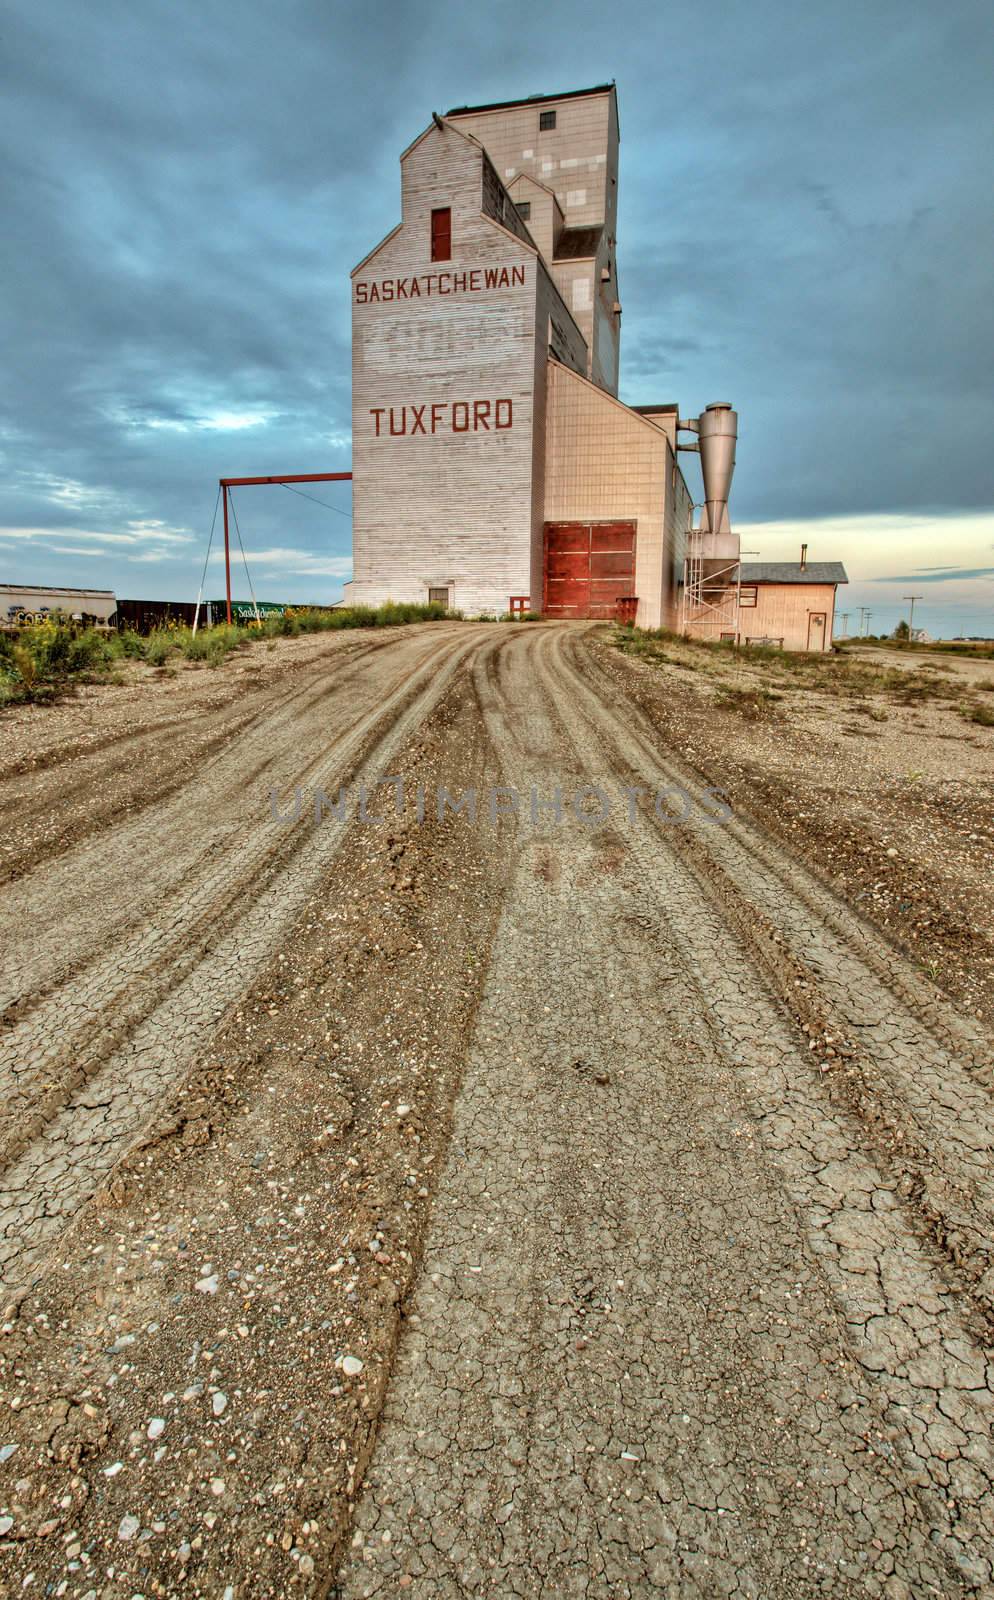 Saskatchewan Grain Elevator by pictureguy